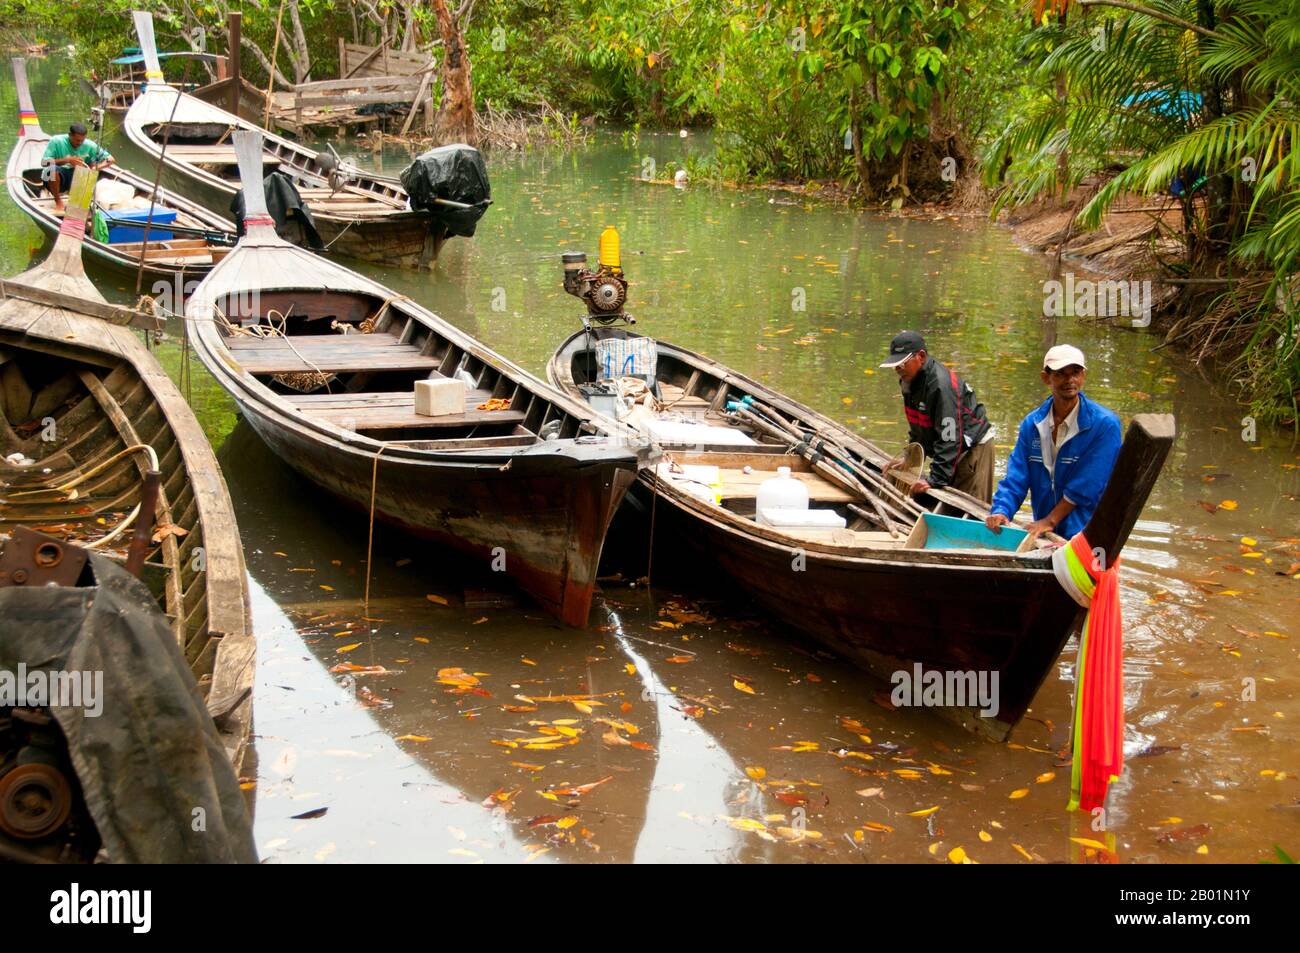 Thailandia: Barche sul fiume presso la palude e la foresta di Tha Pom, sulla costa di Krabi. Tha Pom (il nome completo in thailandese è Pa Phru Tha Pom Khlong Song Nam) è una palude di torba e una foresta che corre principalmente da una piscina chiamata Chong Phra Kaew lungo un corso d'acqua naturale. La gente locale chiama questo canale Khlong Song Nam o "due tipi di canale d'acqua", perché l'acqua dolce limpida si incontra e si fonde con l'acqua di mare con l'alta marea, dando luogo a un ambiente naturale in cui le palme di Lumphi (Eleiodoxa conferta) si incontrano e si mescolano con la foresta di mangrovie. Foto Stock